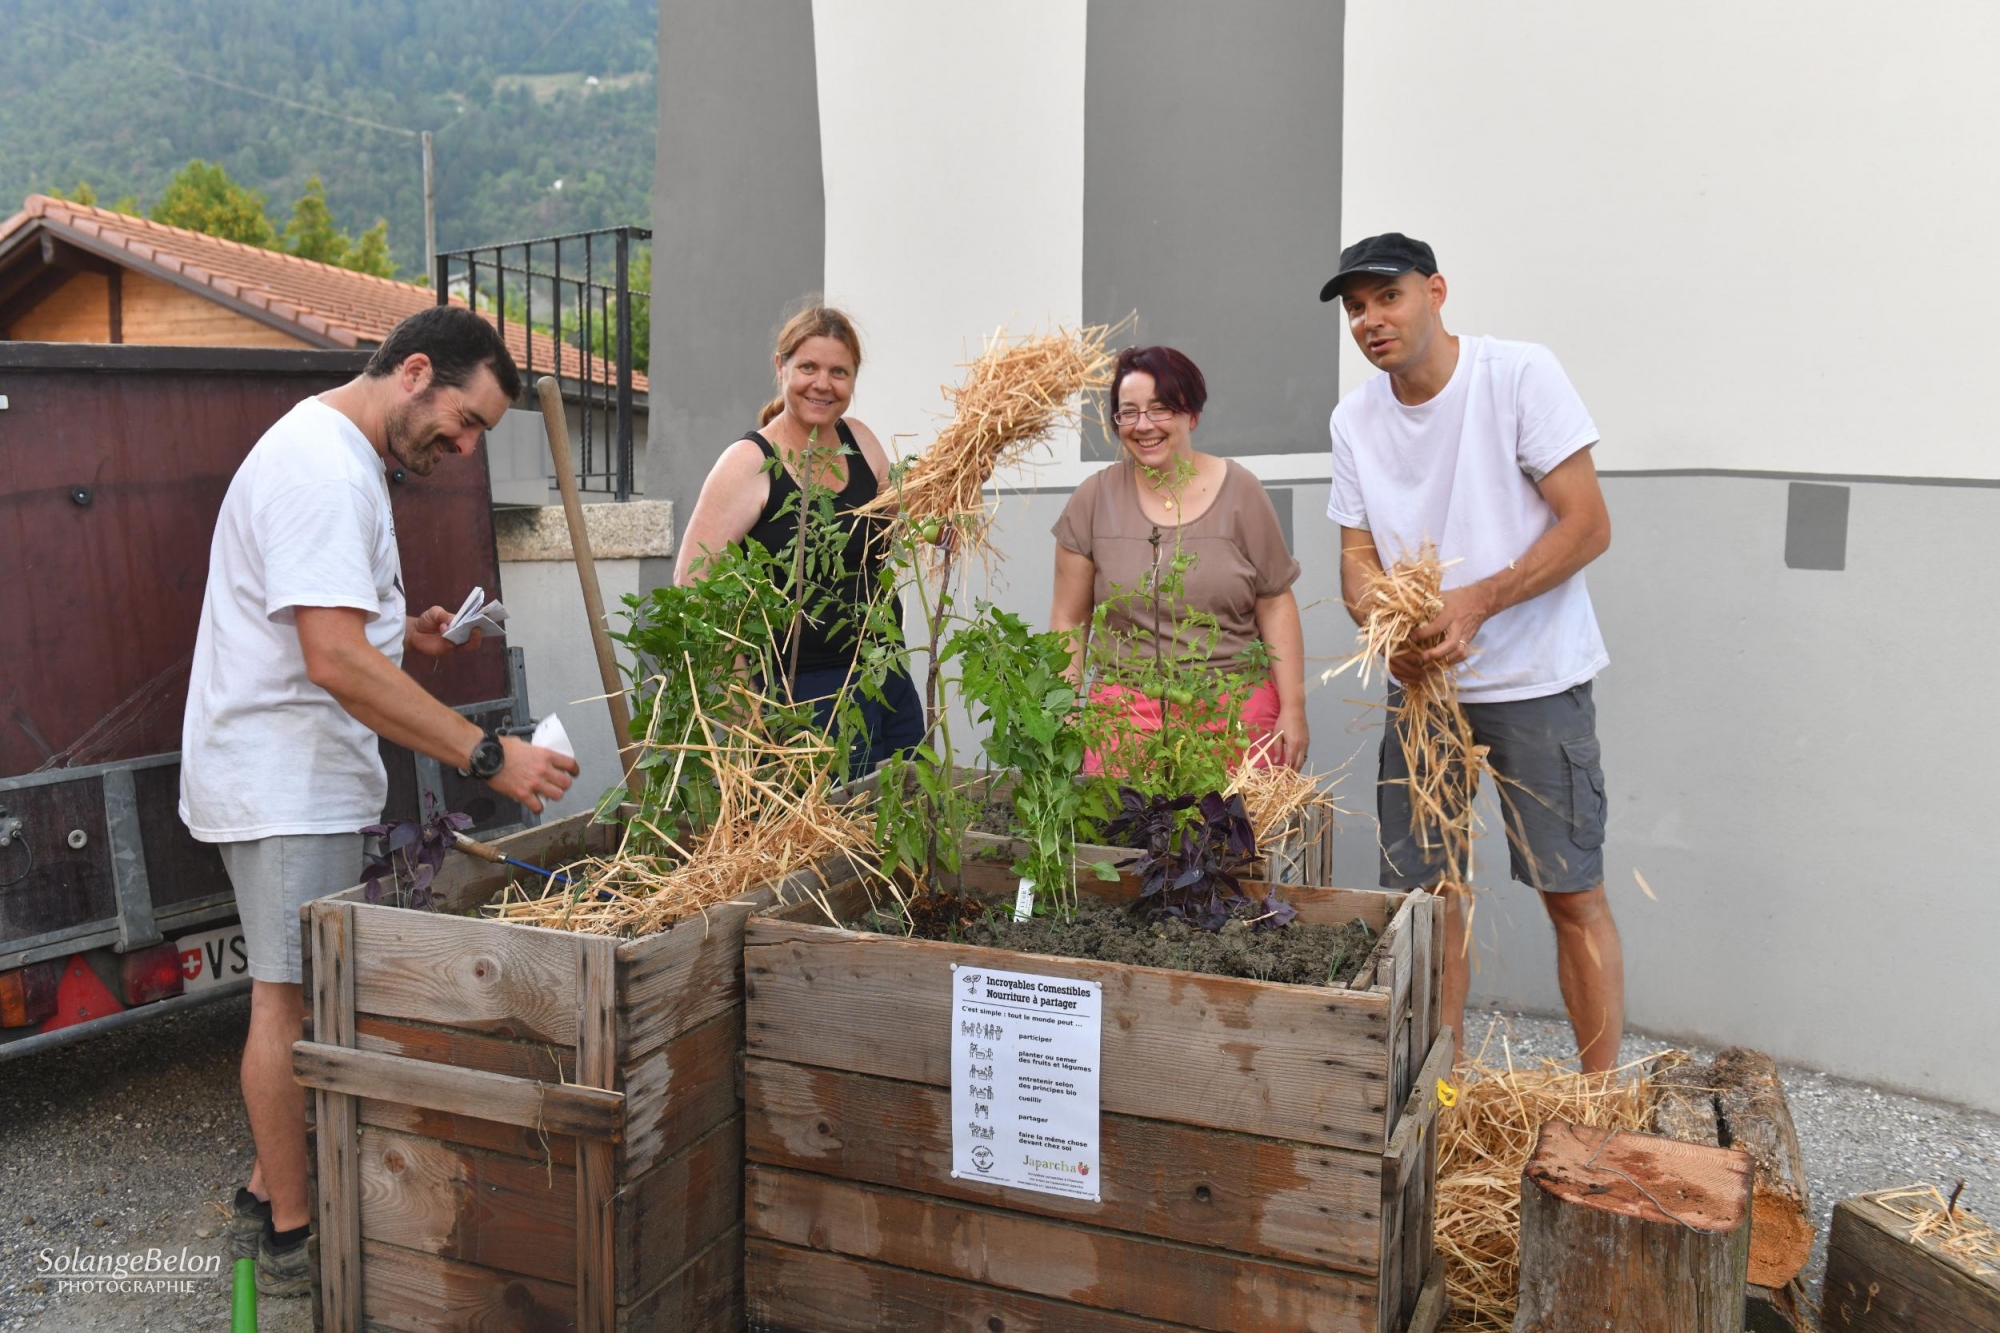 Au cœur de Chamoson, Ted Vanden-Bil, Nathalie Thurre, Laurence Praz et Eric Grand installent deux bacs à fruits et légumes communautaires.